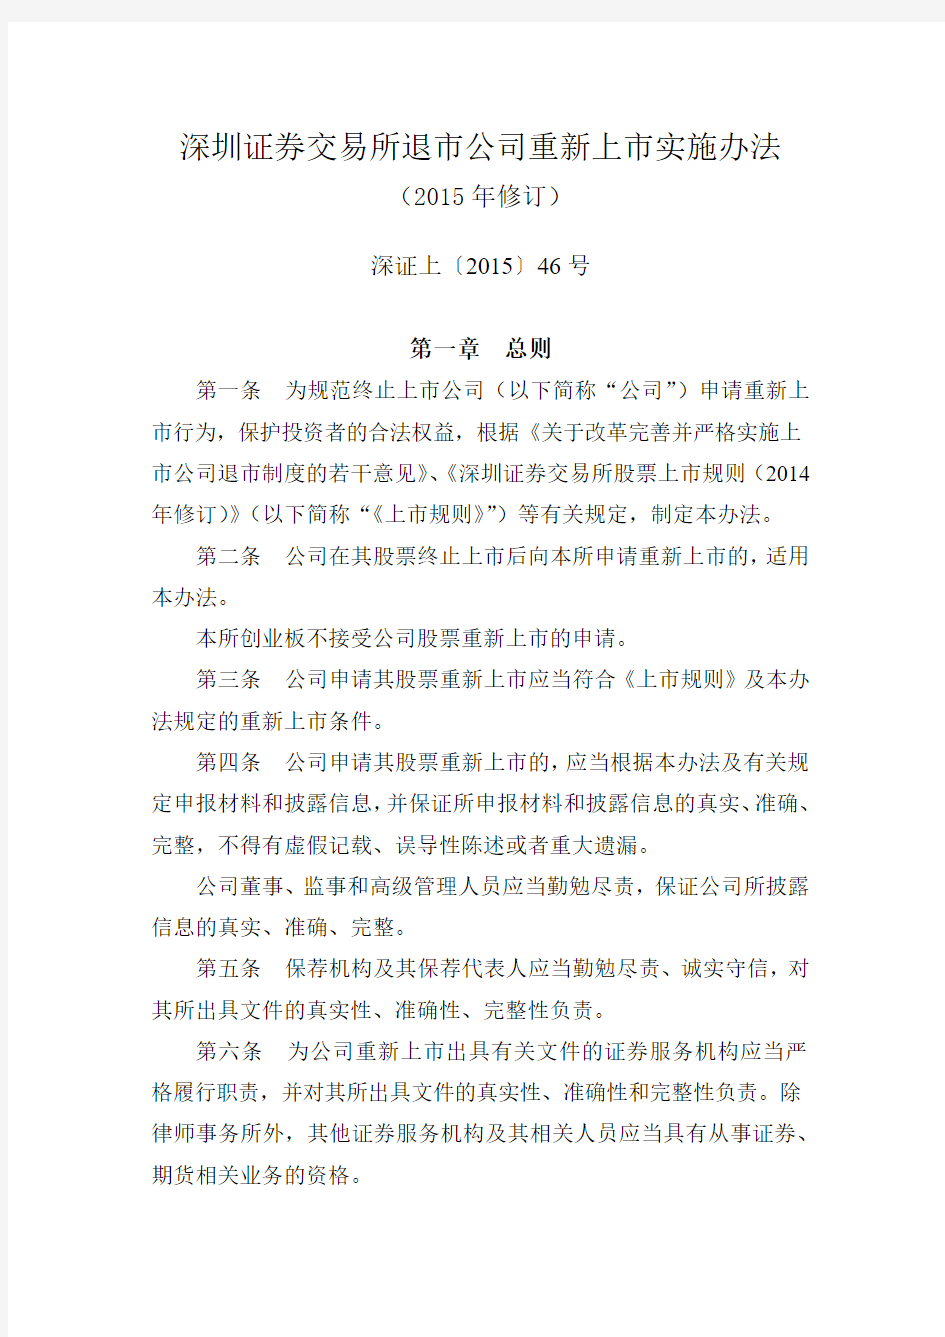 《深圳证券交易所退市公司重新上市实施办法》(2015年修订)